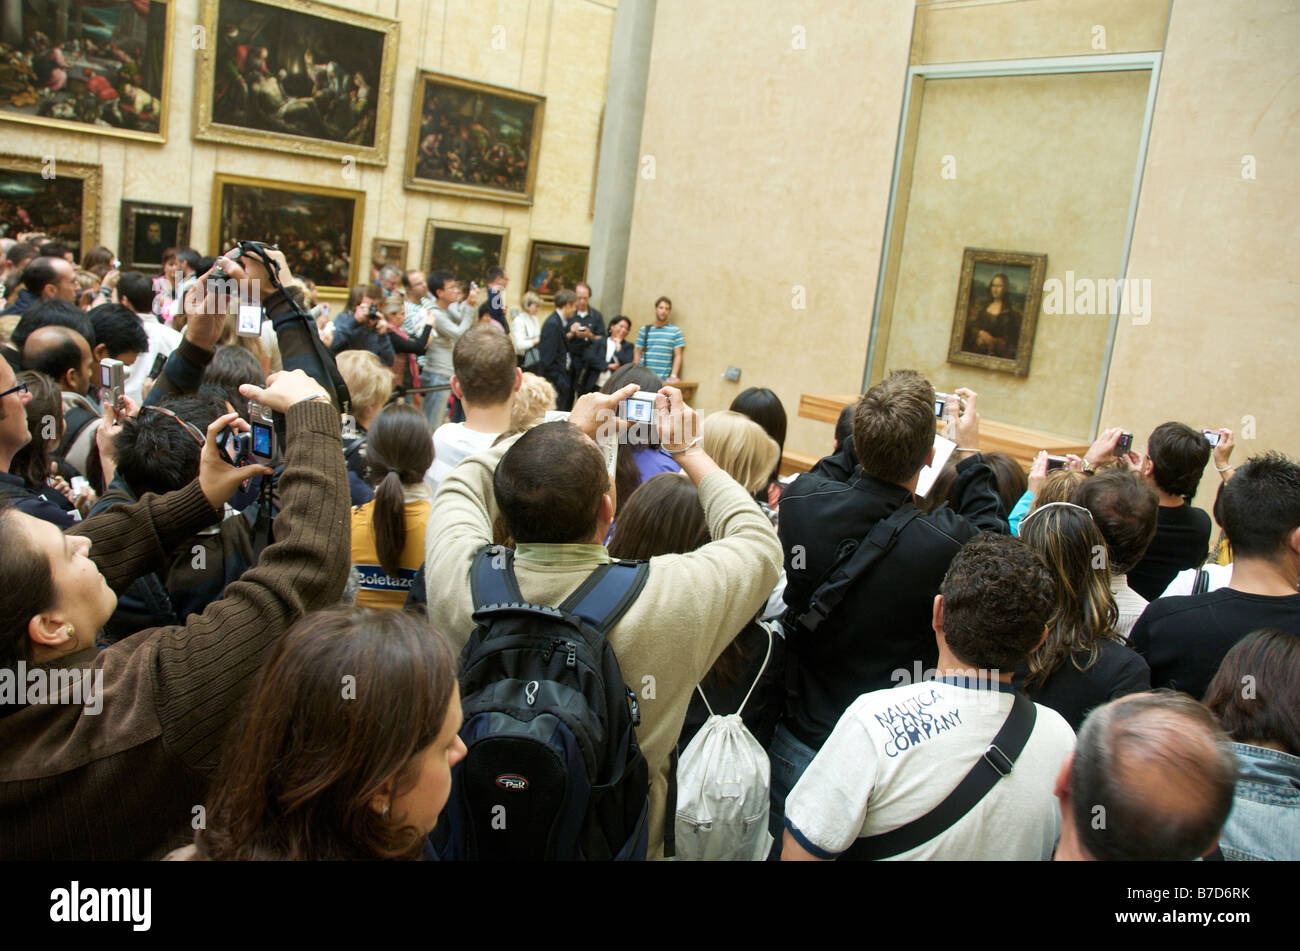 Mona Lisa - foule de touristes à prendre des photos de la peinture au musée du Louvre, Paris, France Banque D'Images